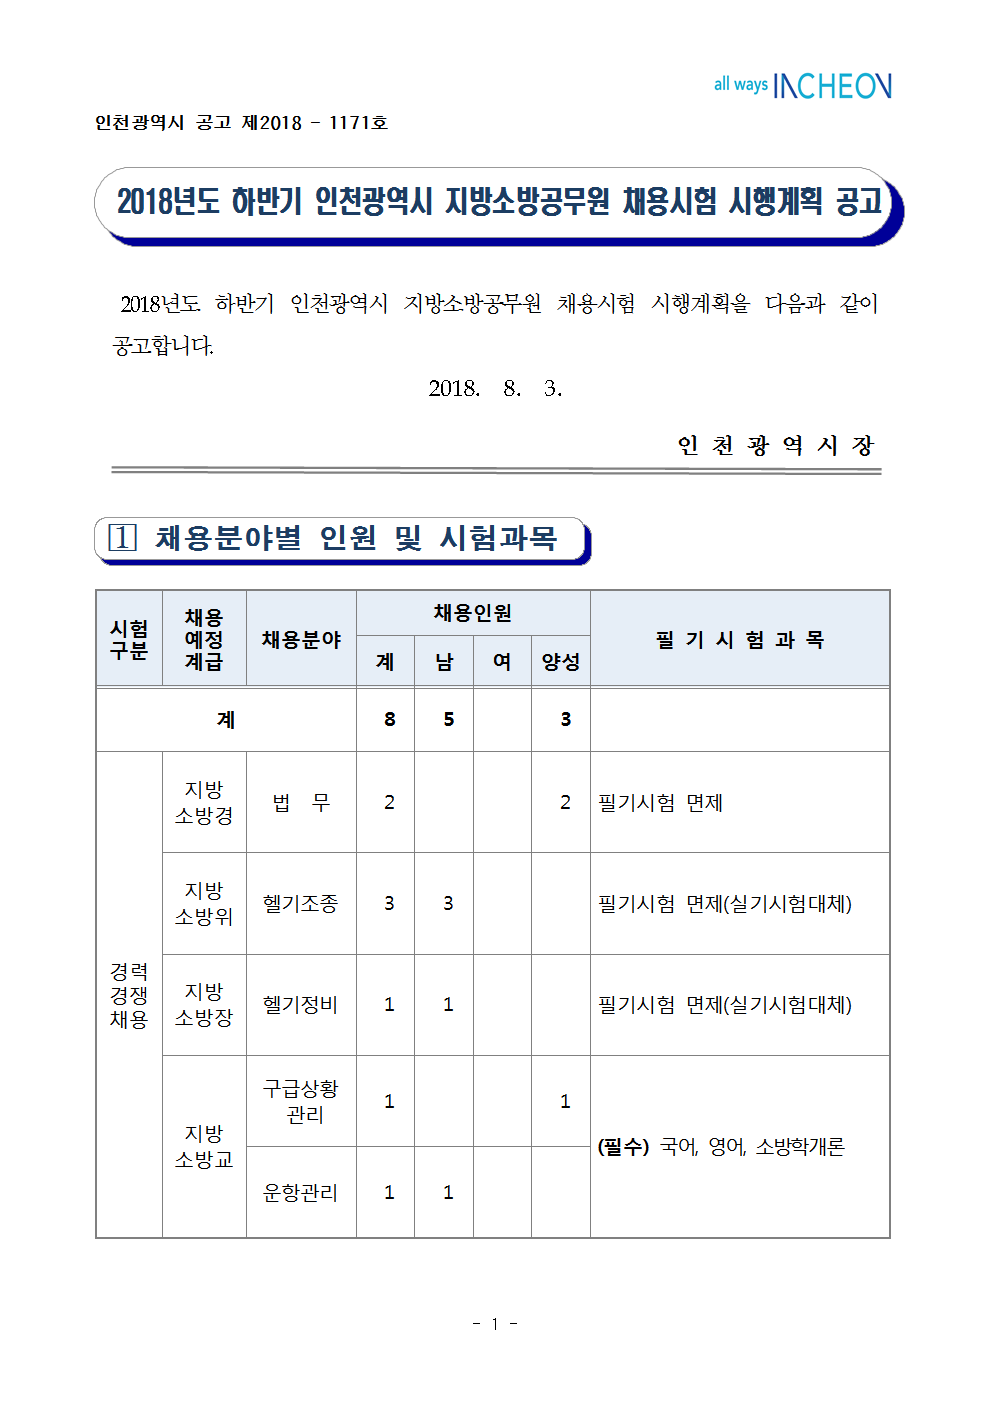 2018년도 하반기 인천광역시 지방소방공무원 채용시험 시행계획 공고문001.png